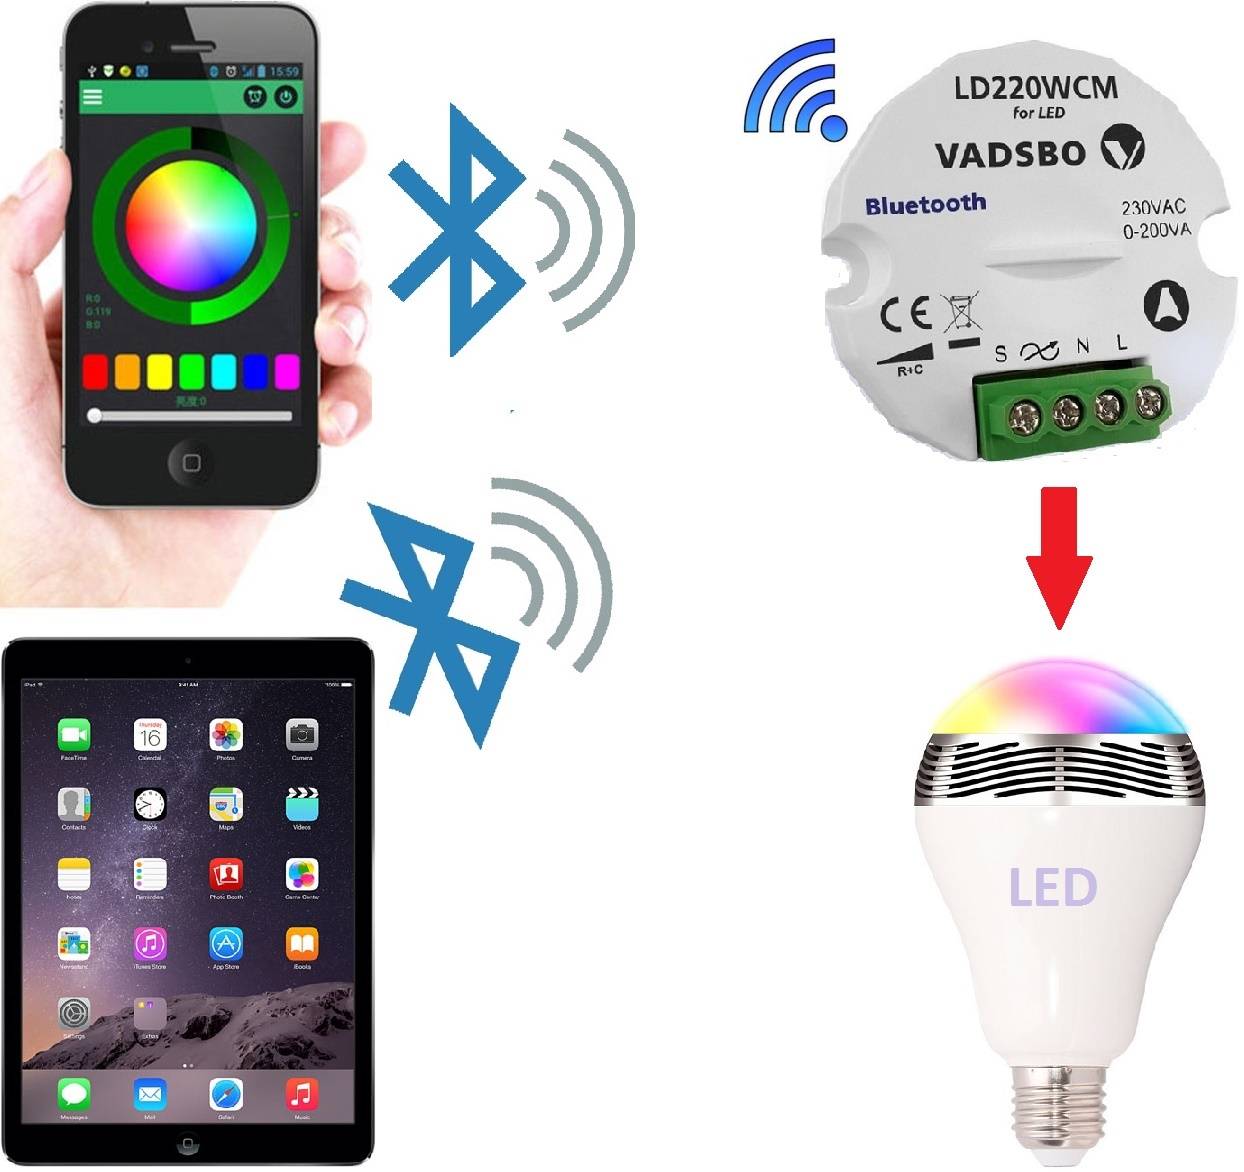 Беспроводные выключатели света — радио и инфракрасные (ик) пульты, устройство и принцип действия